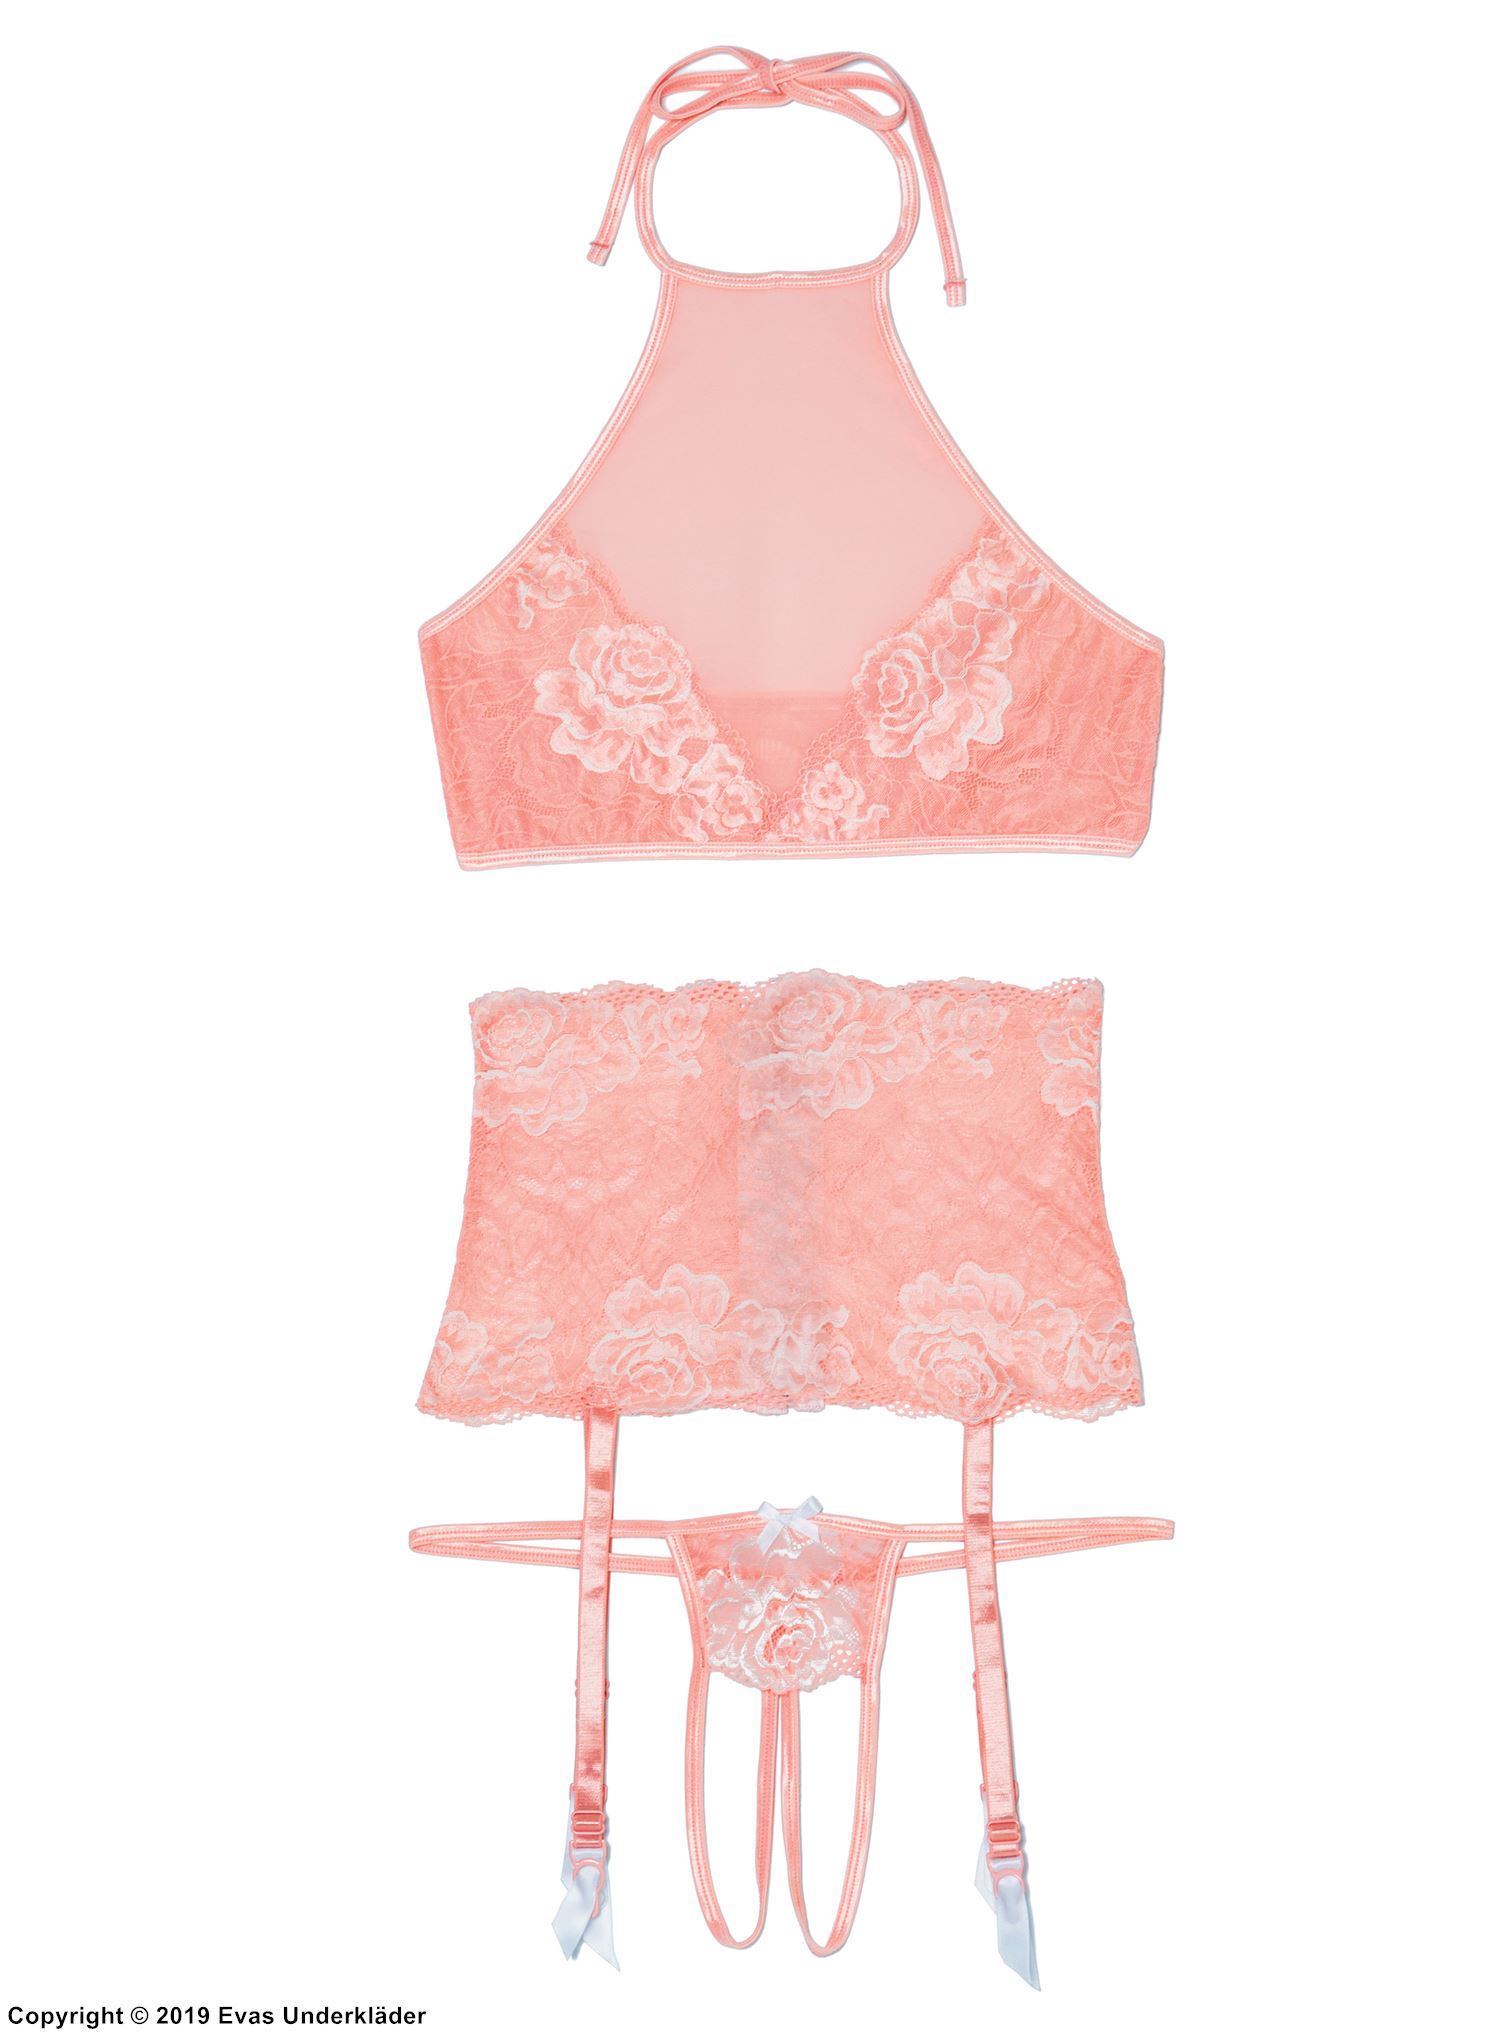 Romantic lingerie set, lace embroidery, garter belt